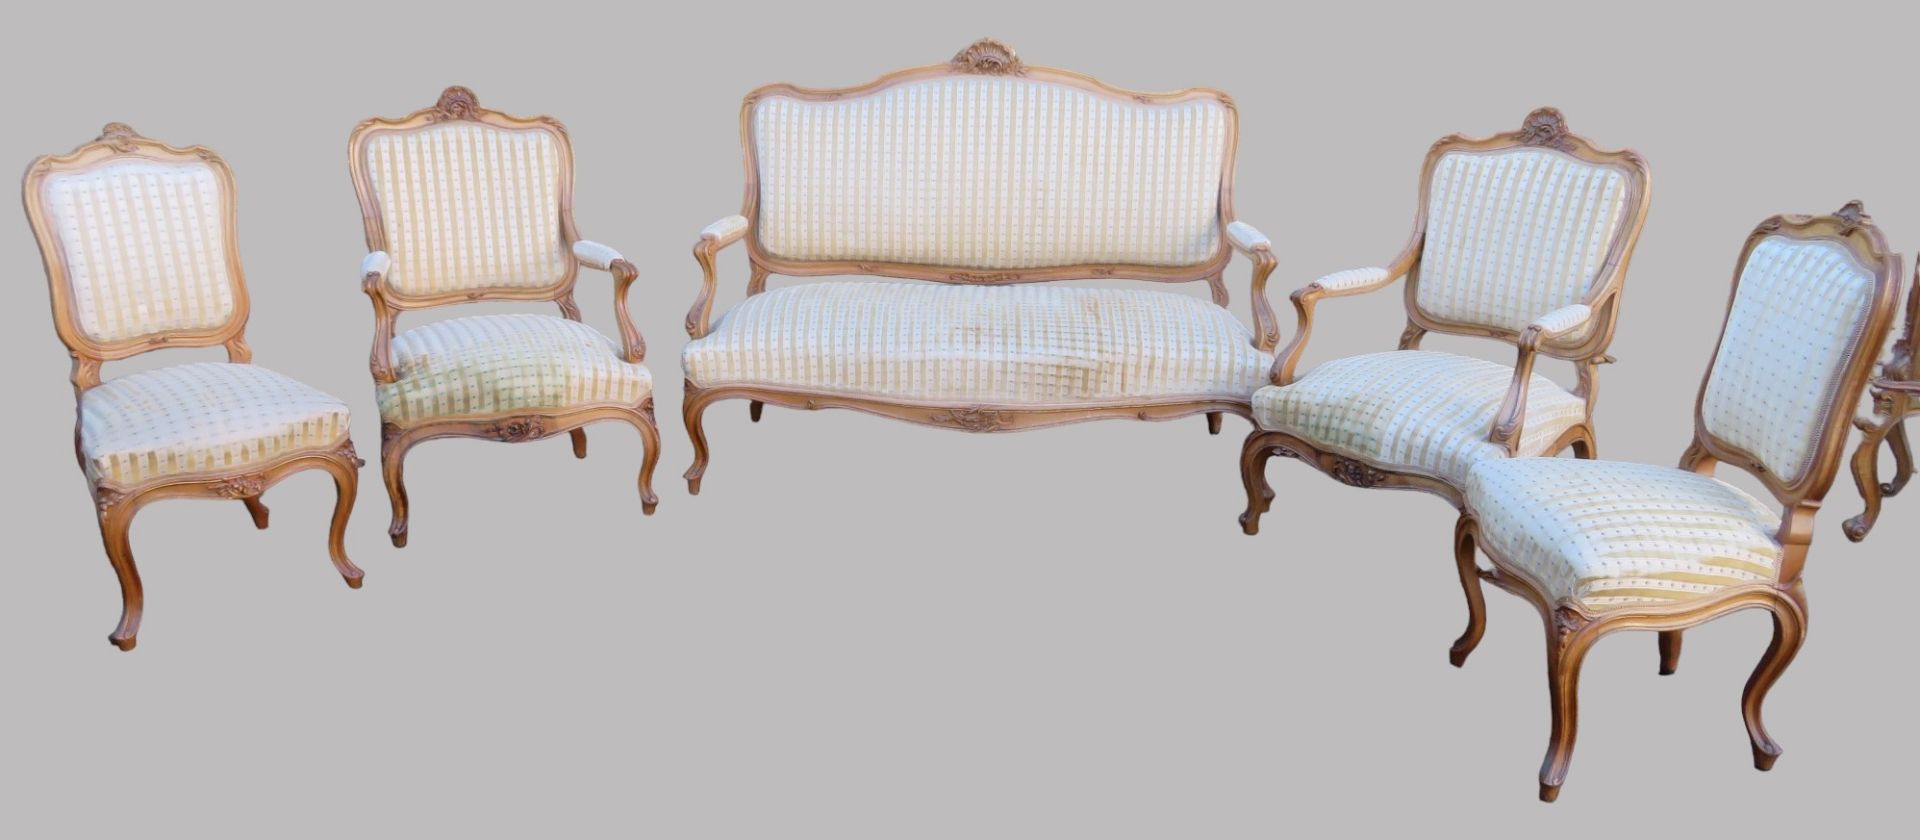 5 teilige Sitzgarnitur, Rokokostil, 19. Jahrhundert, Nussbaum beschnitzt, rest.bed., Sofa 108 x 144